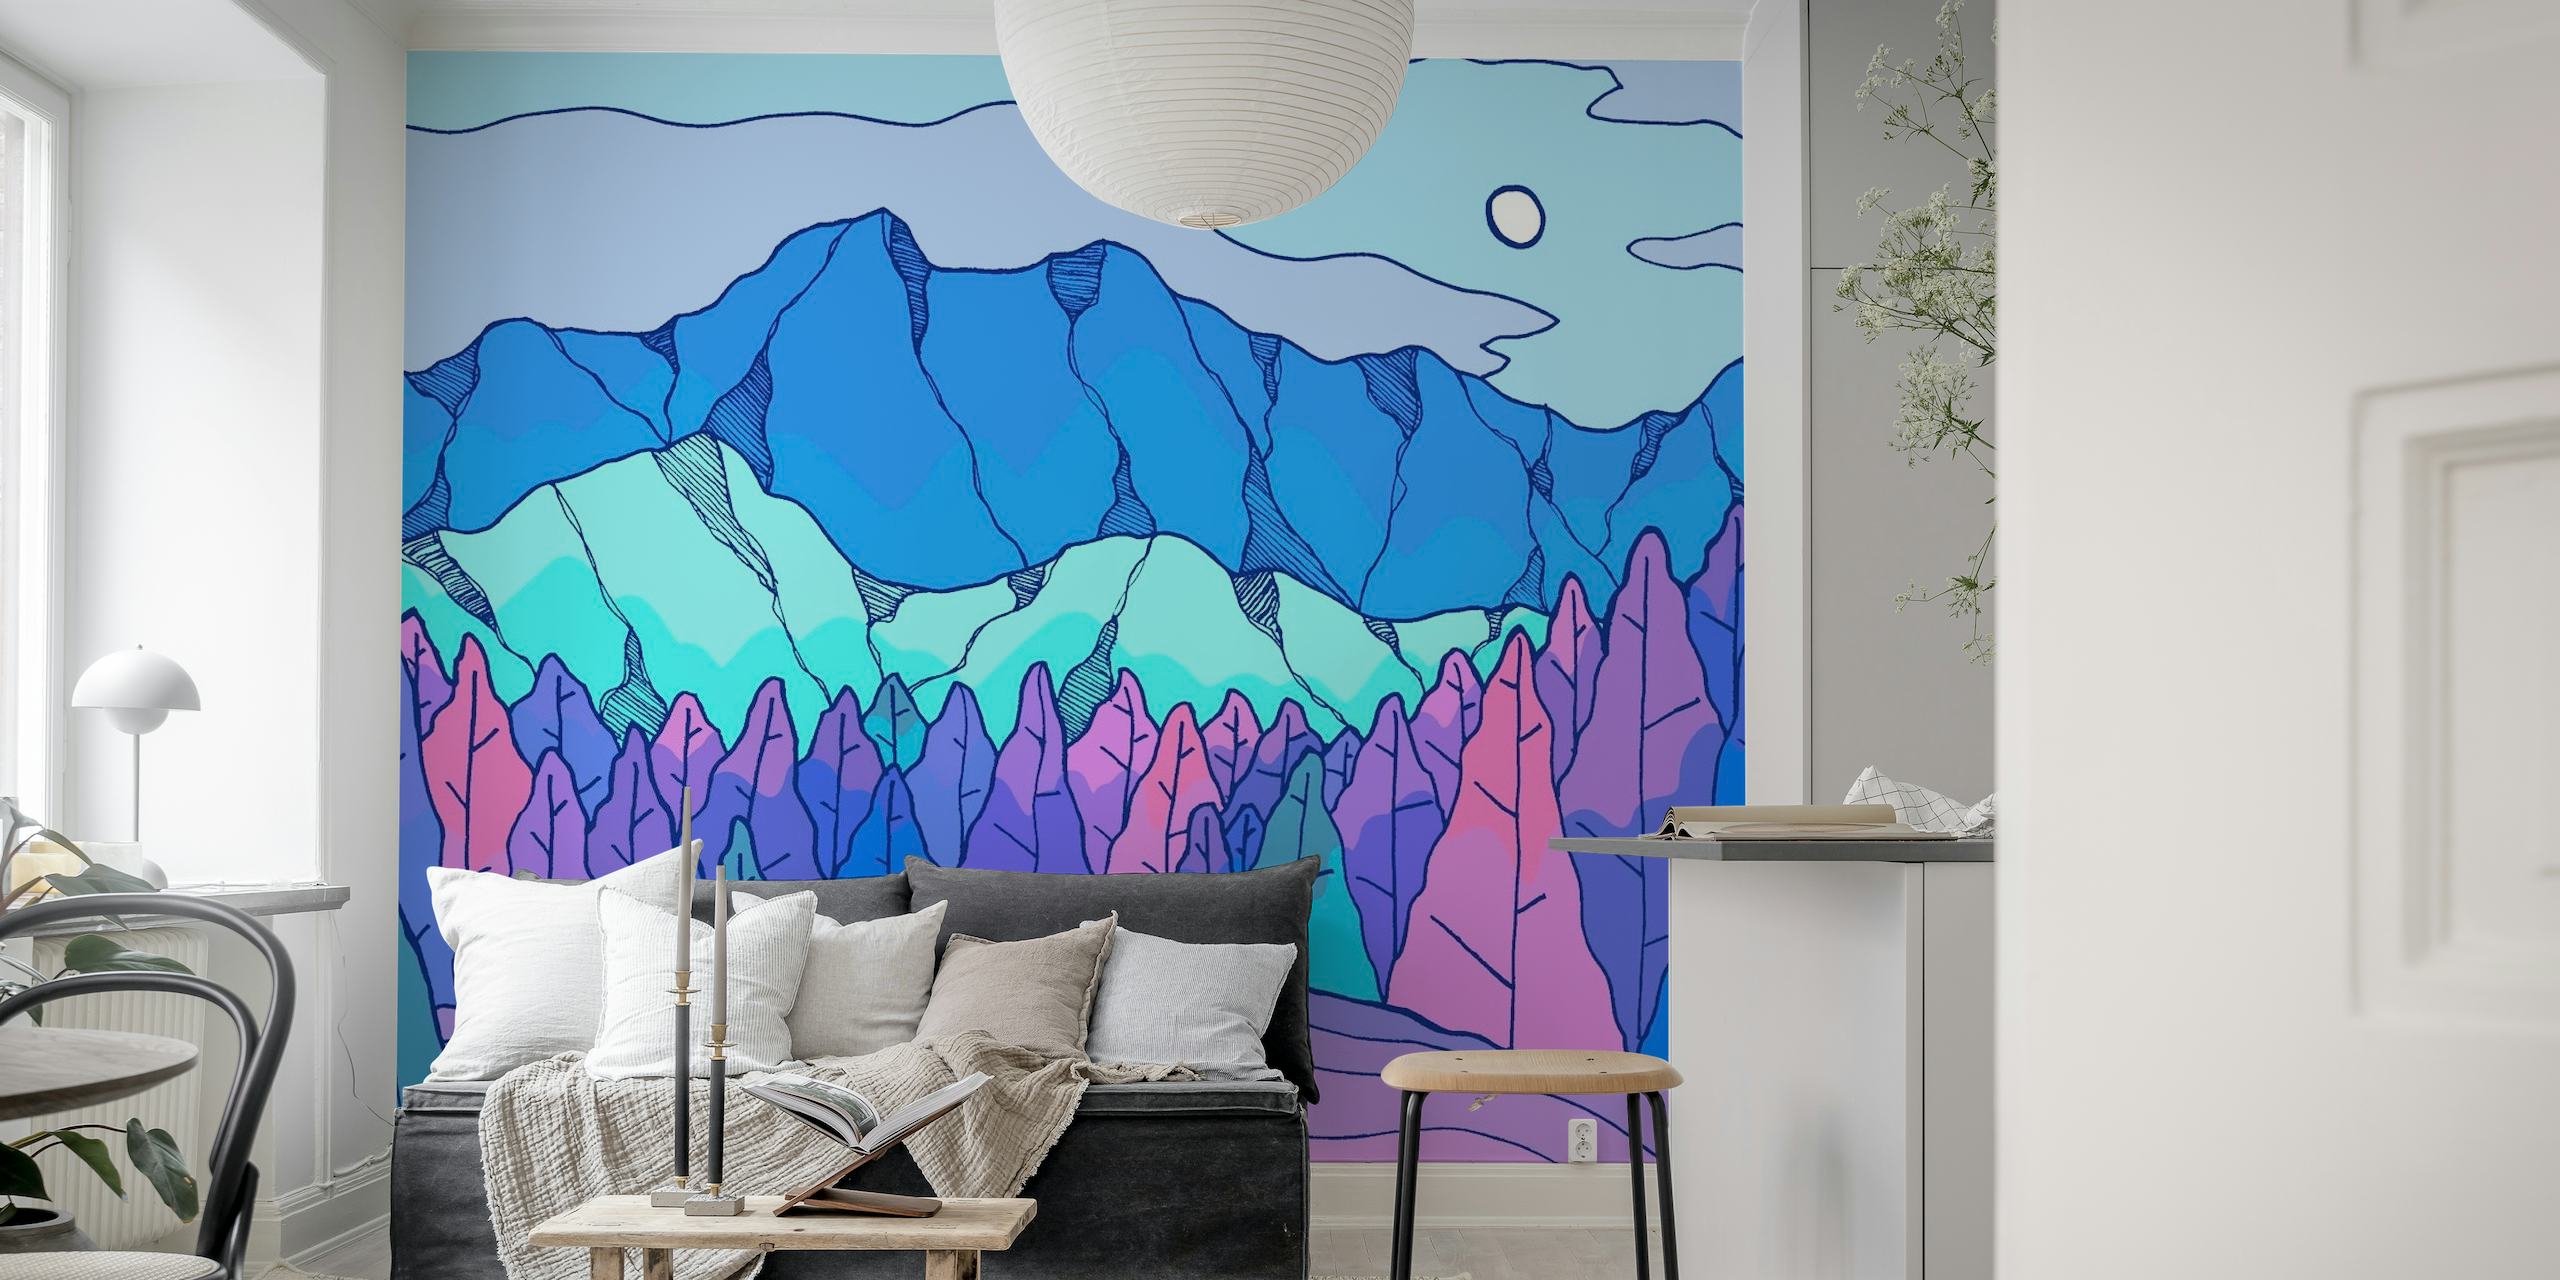 Fiume stilizzato dai colori al neon che scorre attraverso un paesaggio montano geometrico sotto un murale a forma di luna pallida